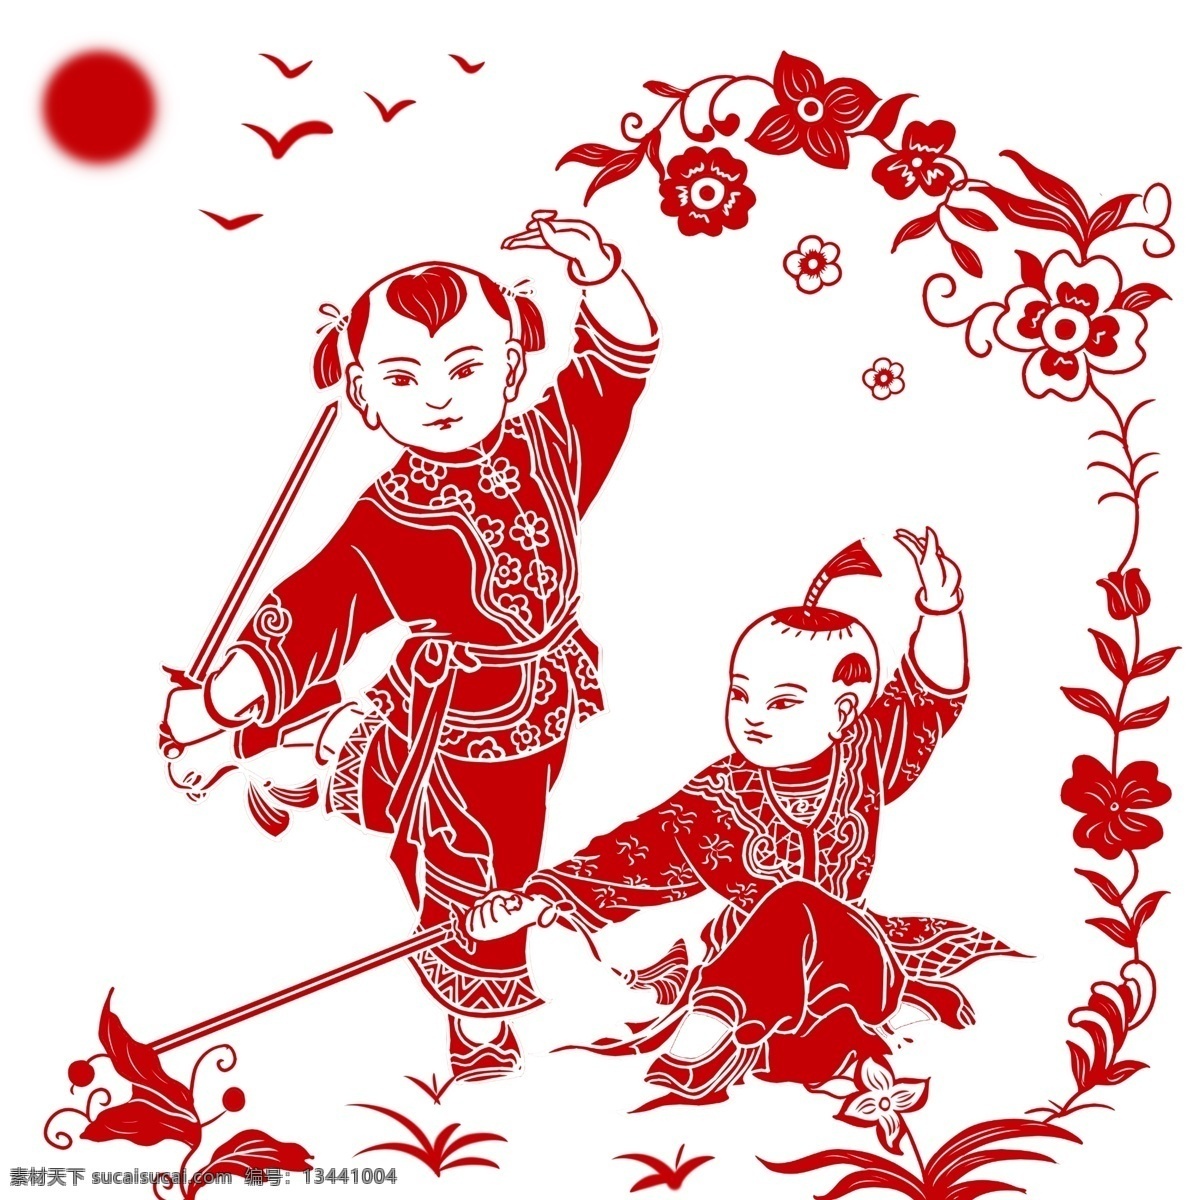 手绘 复古 新年 中国 风 剪纸 传统节日 中国风 过年 红色 喜庆 高兴 幸福 快乐 吉祥 如意 2019年